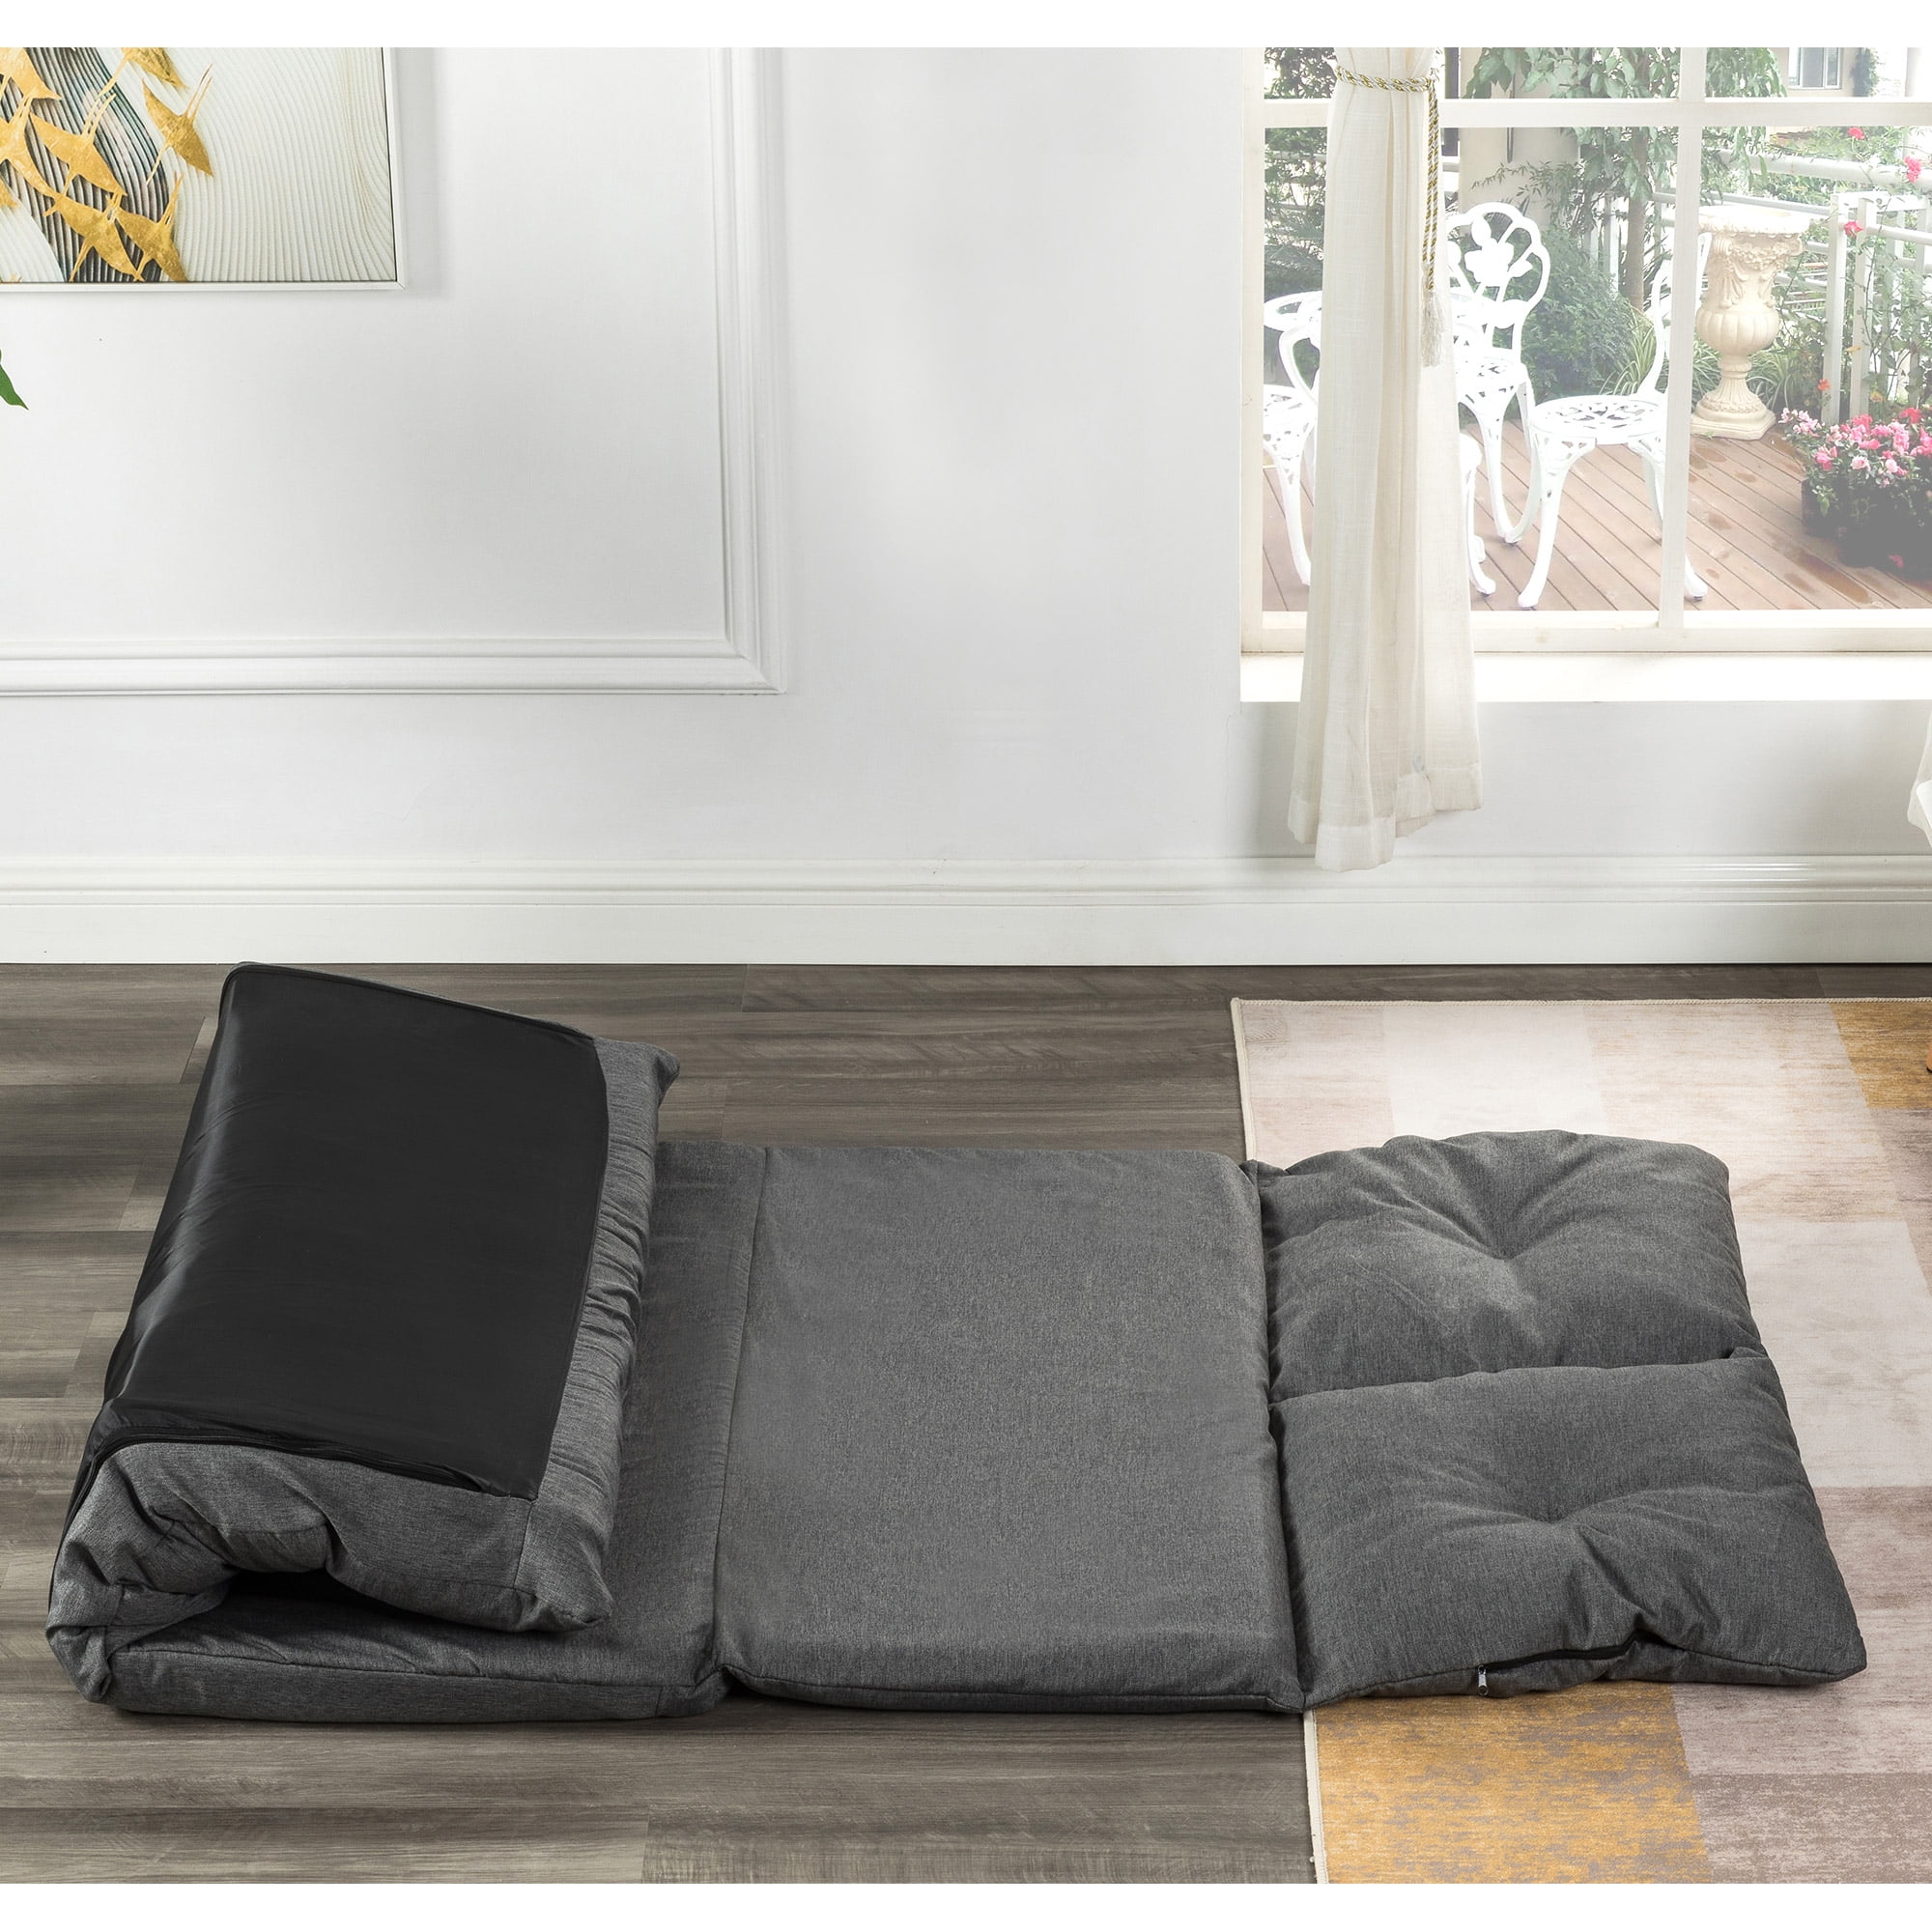 Details about   4” Full Size Folding Foam Mattress Tri-fold Sofa Bed Guest Floor Sleeping Mat 